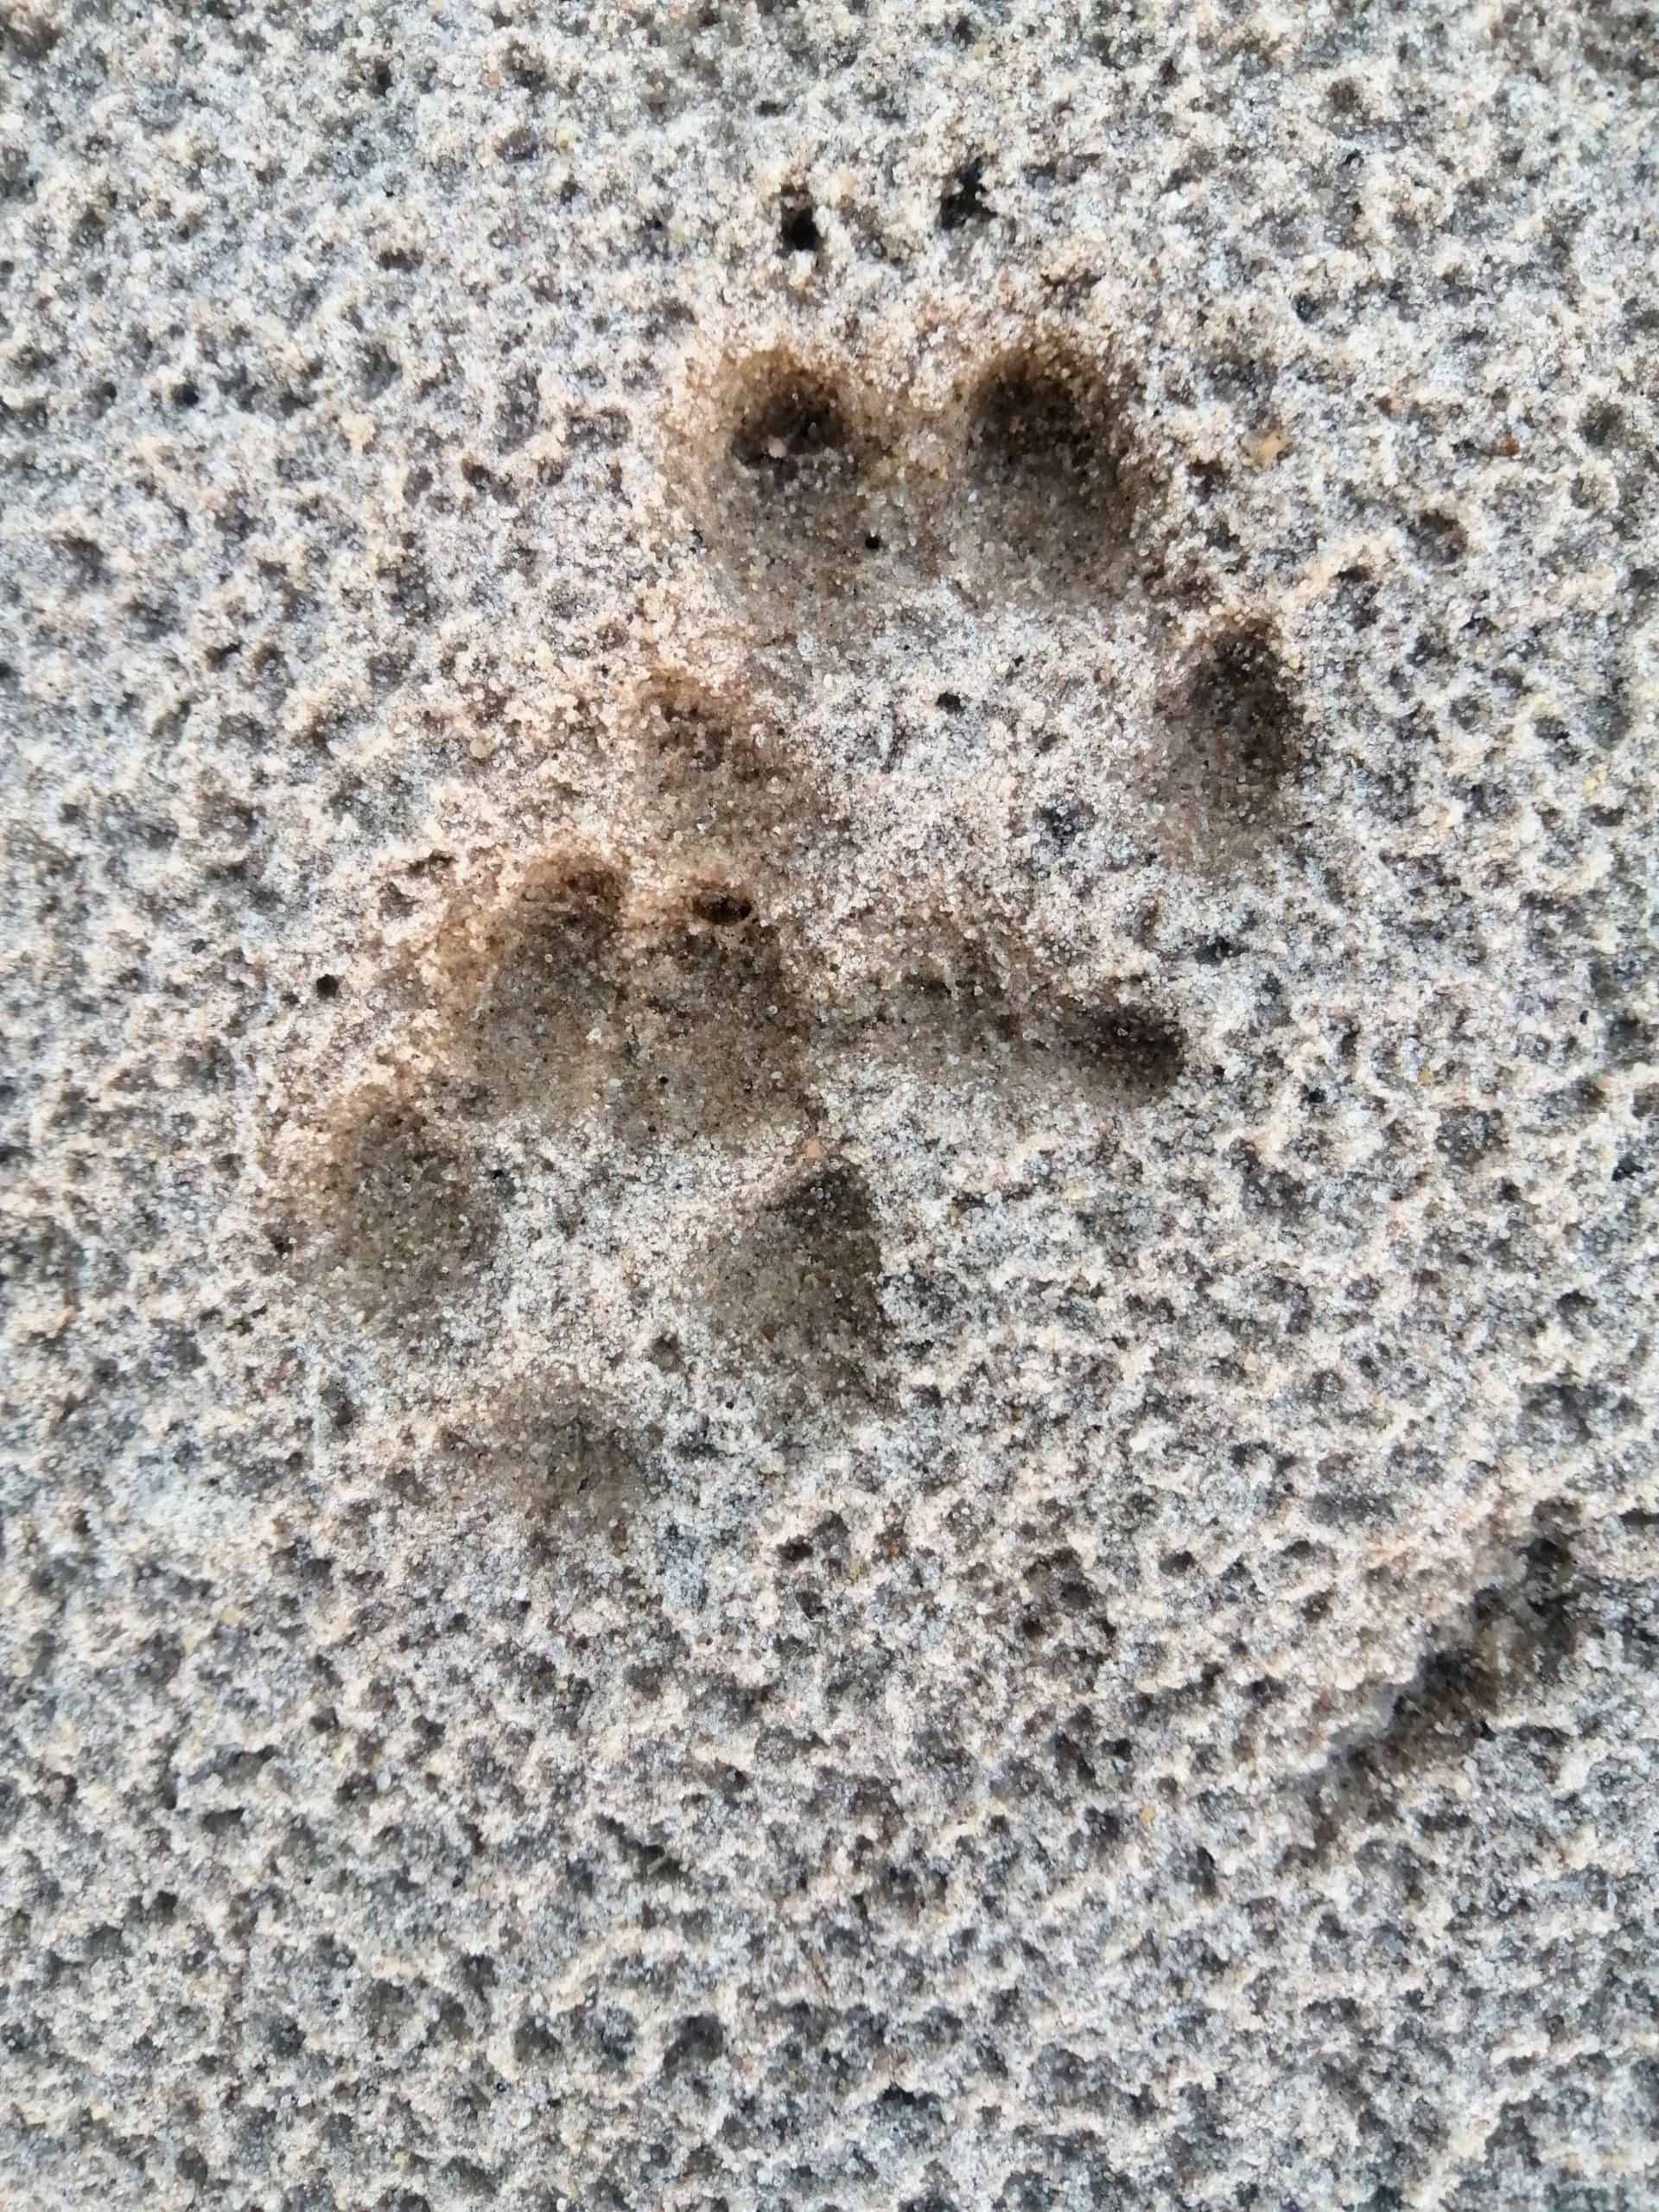 Fox tracks in sandy soil